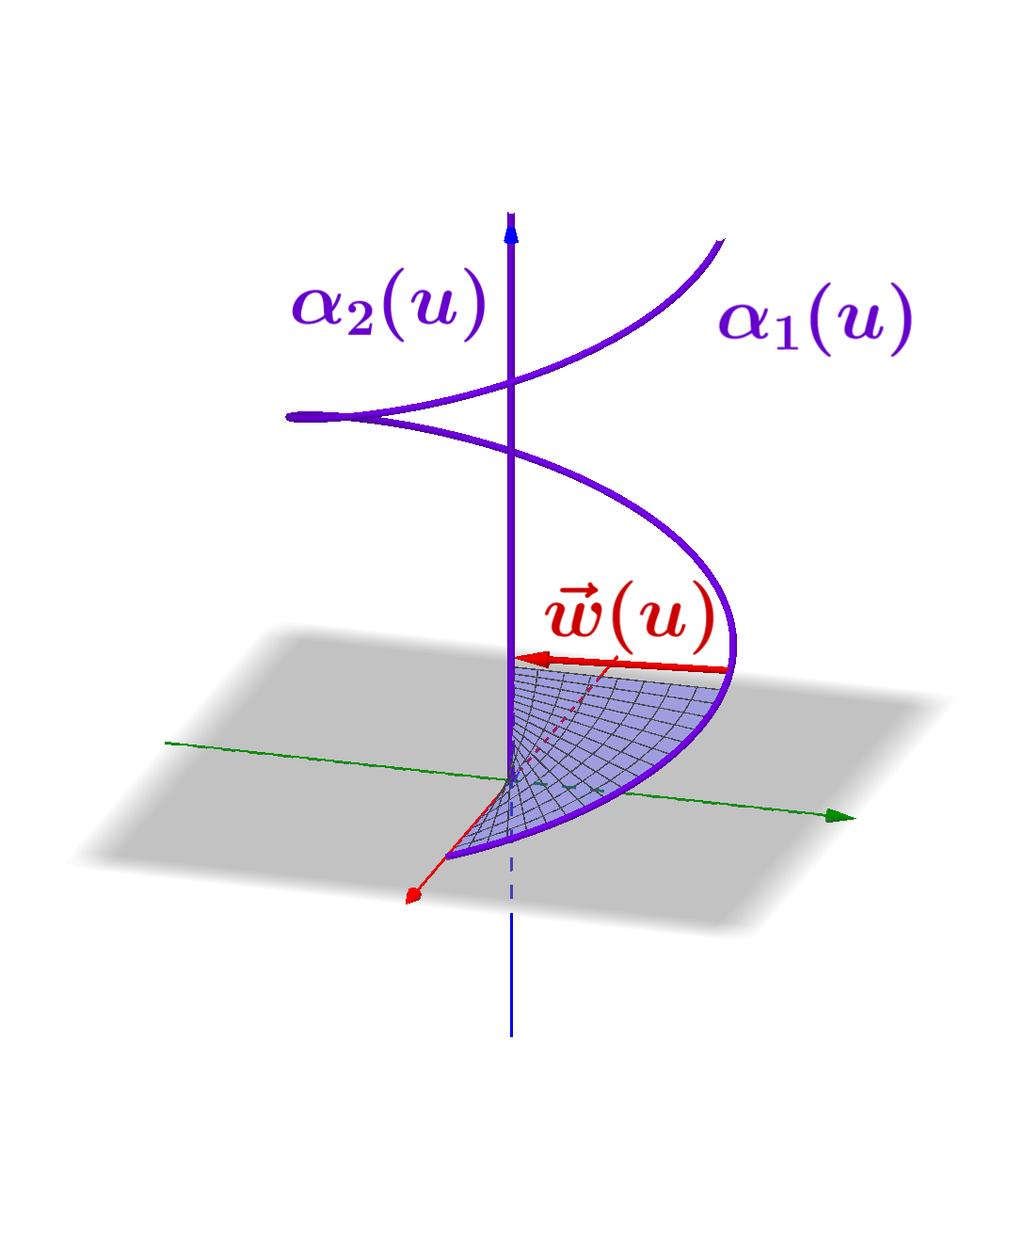 Dpto. Matemática Aplicada E.T.S. Arquitectura, U.P.M. Curvas y Super cies HOJA DE PROBLEMAS: SUPERFICIES REGLADAS 1 Parametrización de super cies regladas Parametrizar las siguientes super cies regladas: 1.